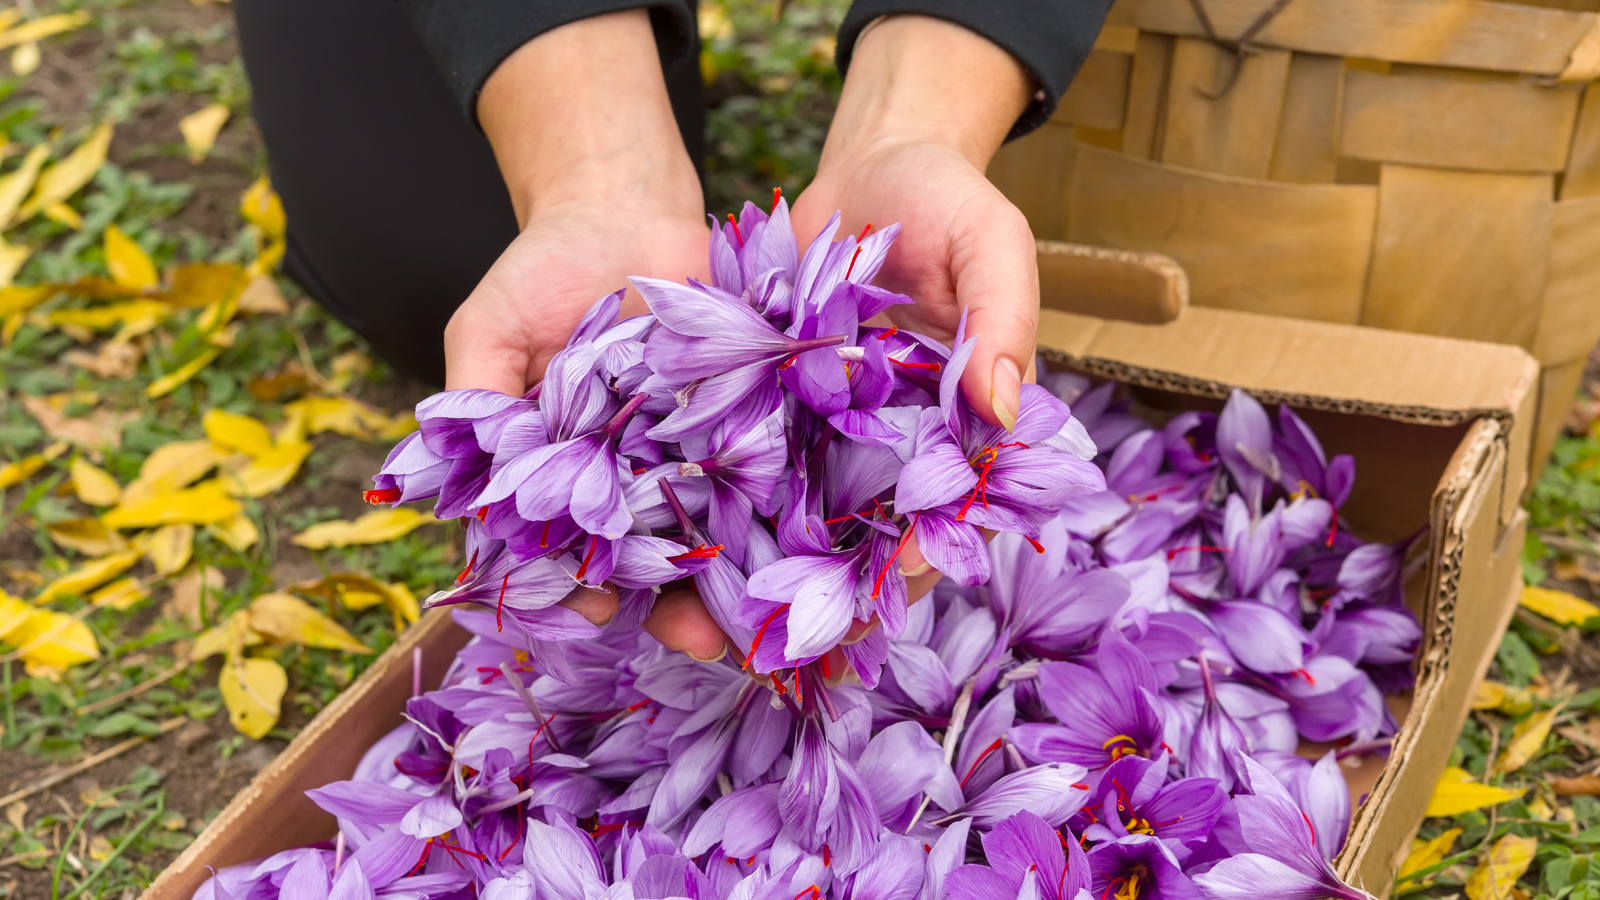 Saffron là gì và có tác dụng như thế nào đối với sức khỏe? Hãy cùng GenVita tìm hiểu kỹ hơn về saffron trong bài viết này bạn nhé!